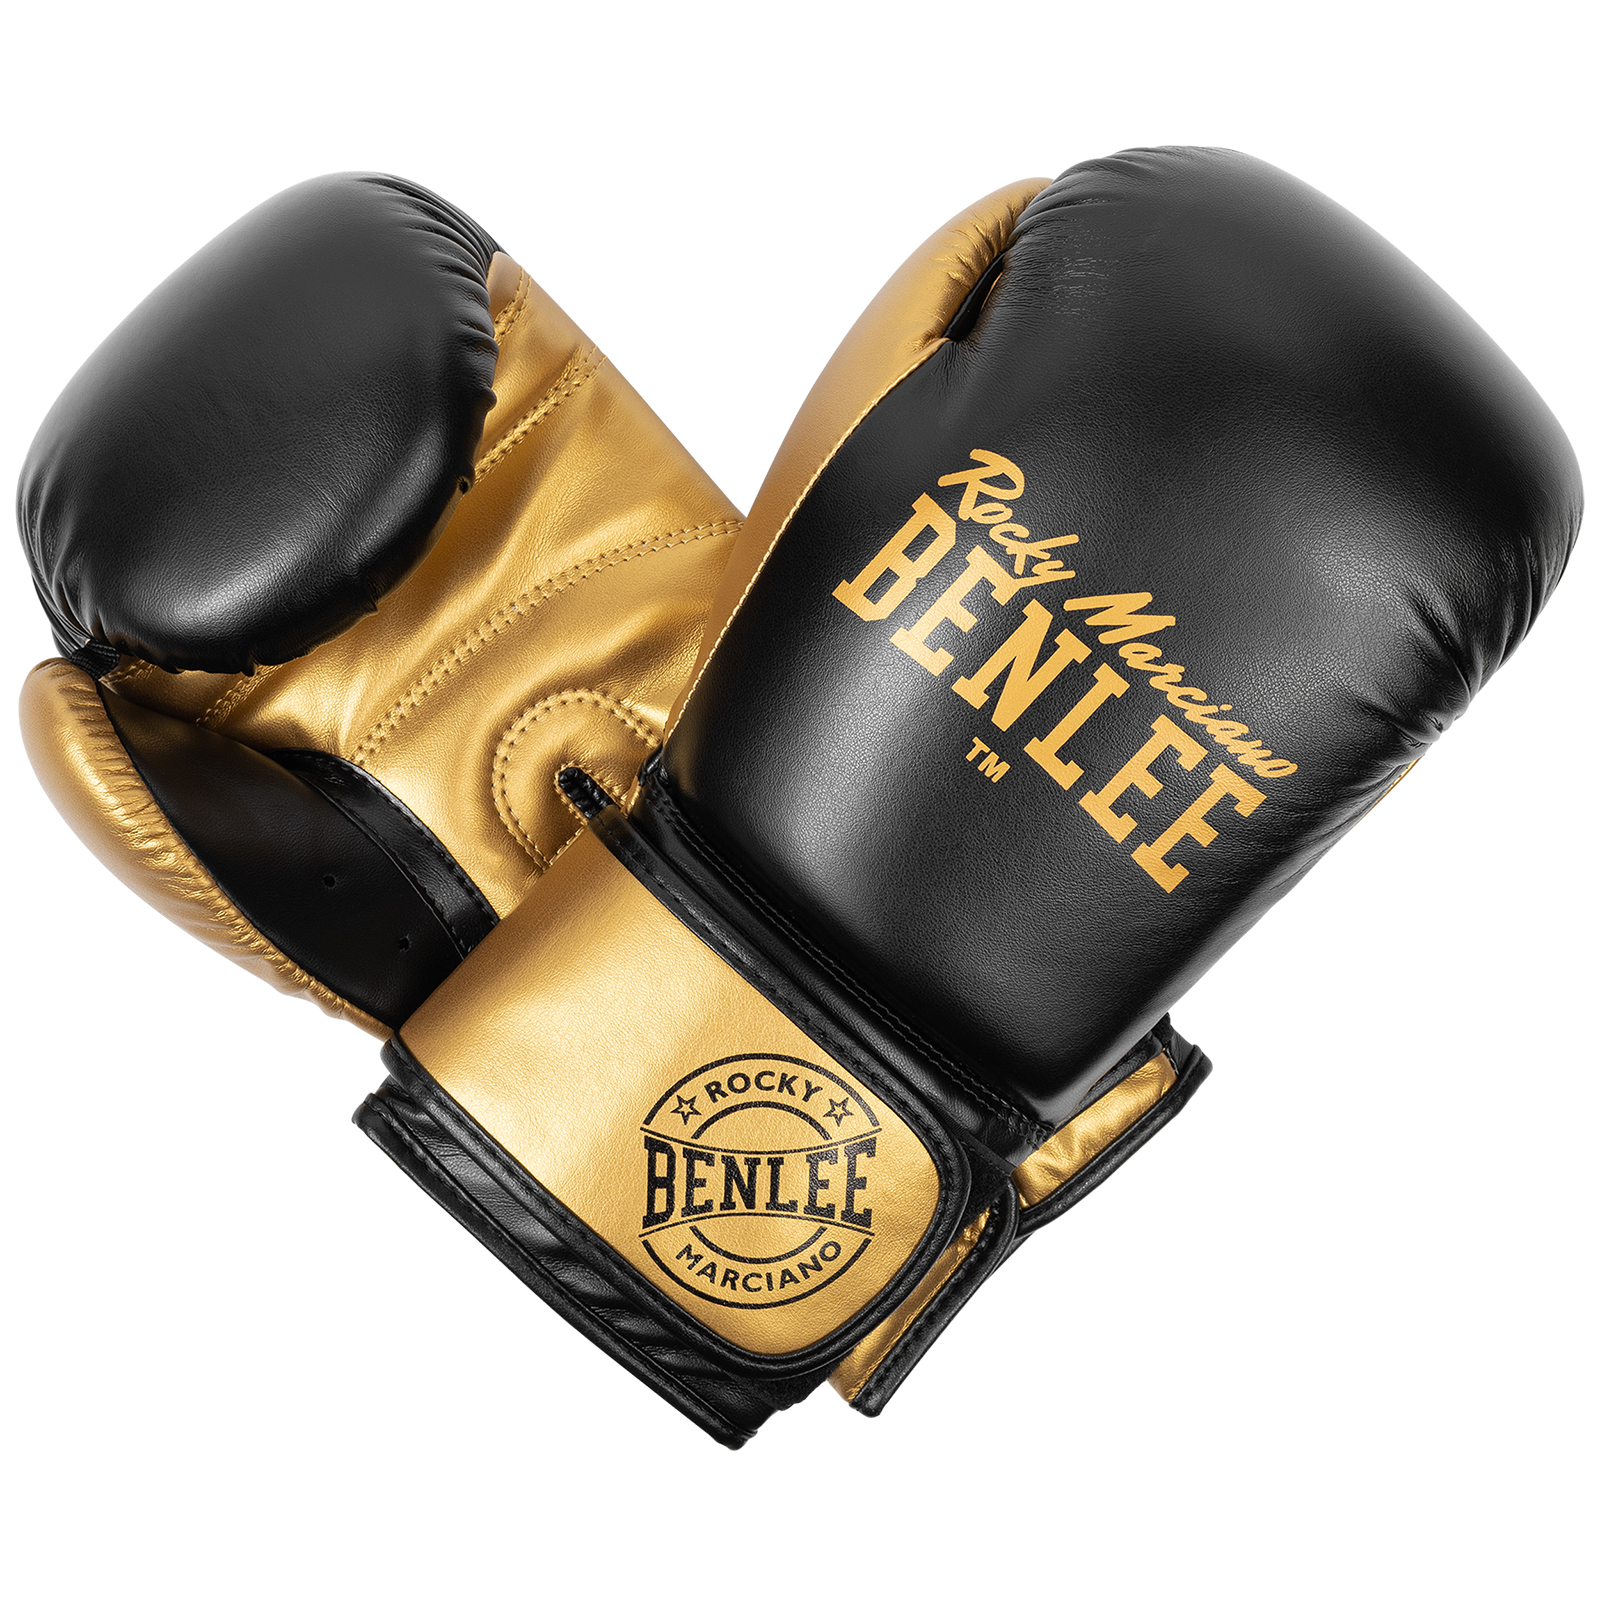  Боксерские перчатки Benlee Carlos золотые 